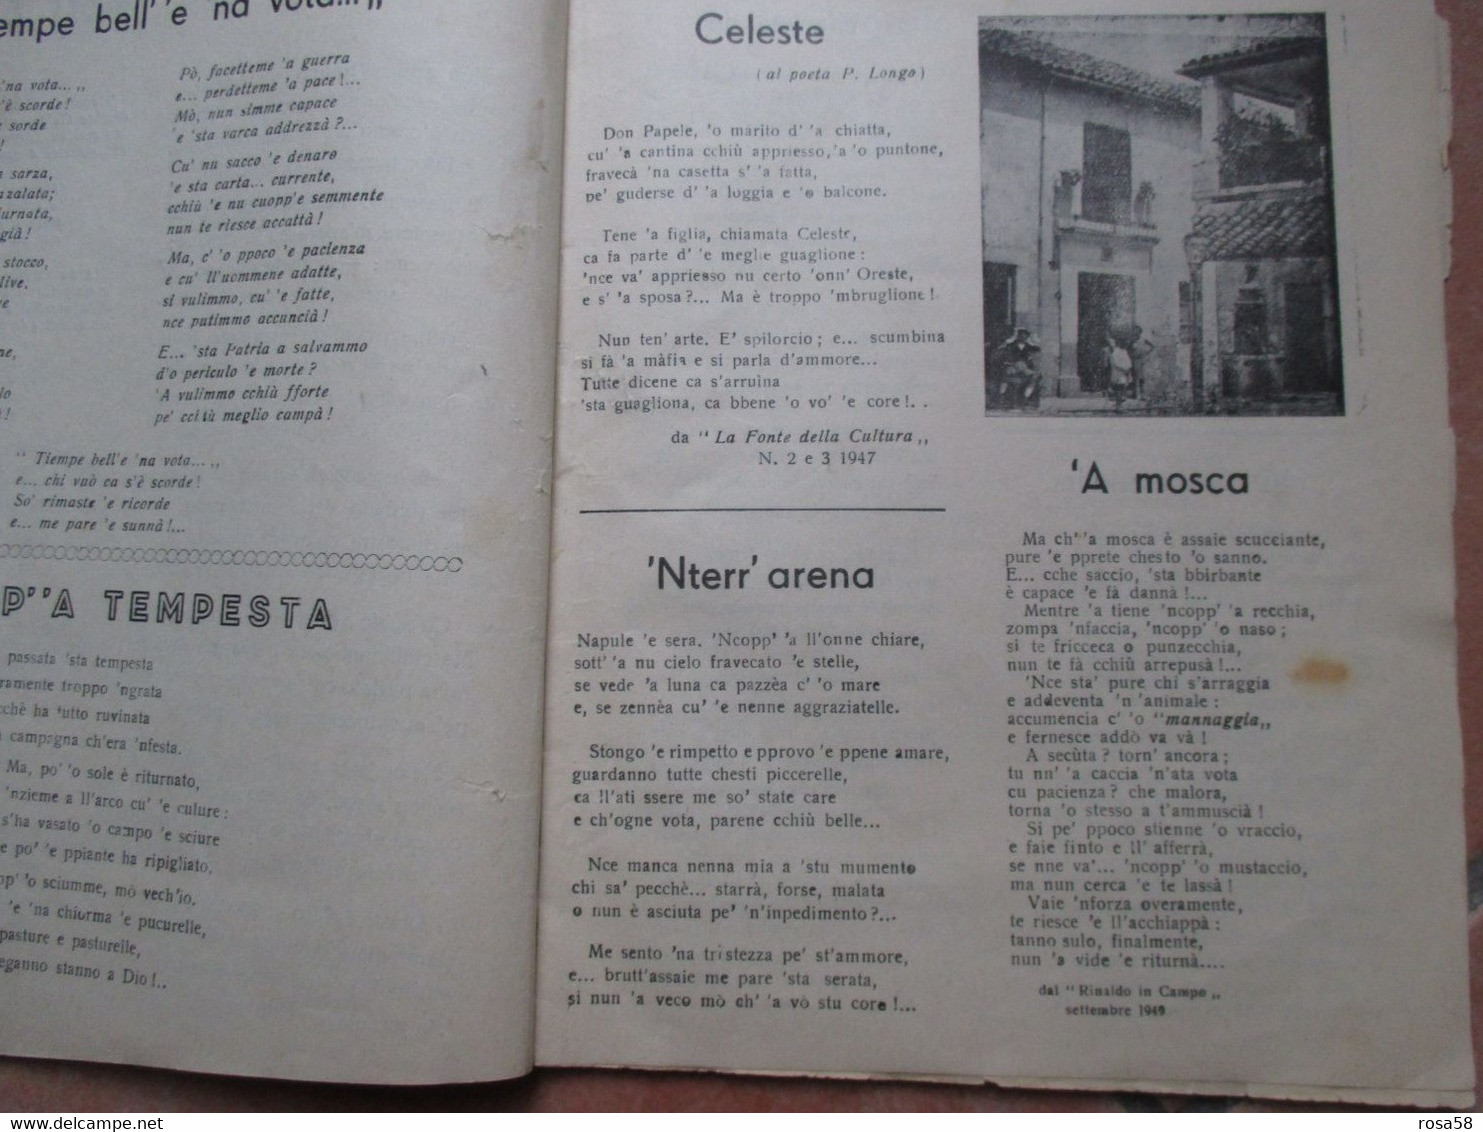 ANNO SANTO 1950 DOCE e AMARO Poesie Napoletane CARMINE MEGLIO Casa editrice INC libretto epoca